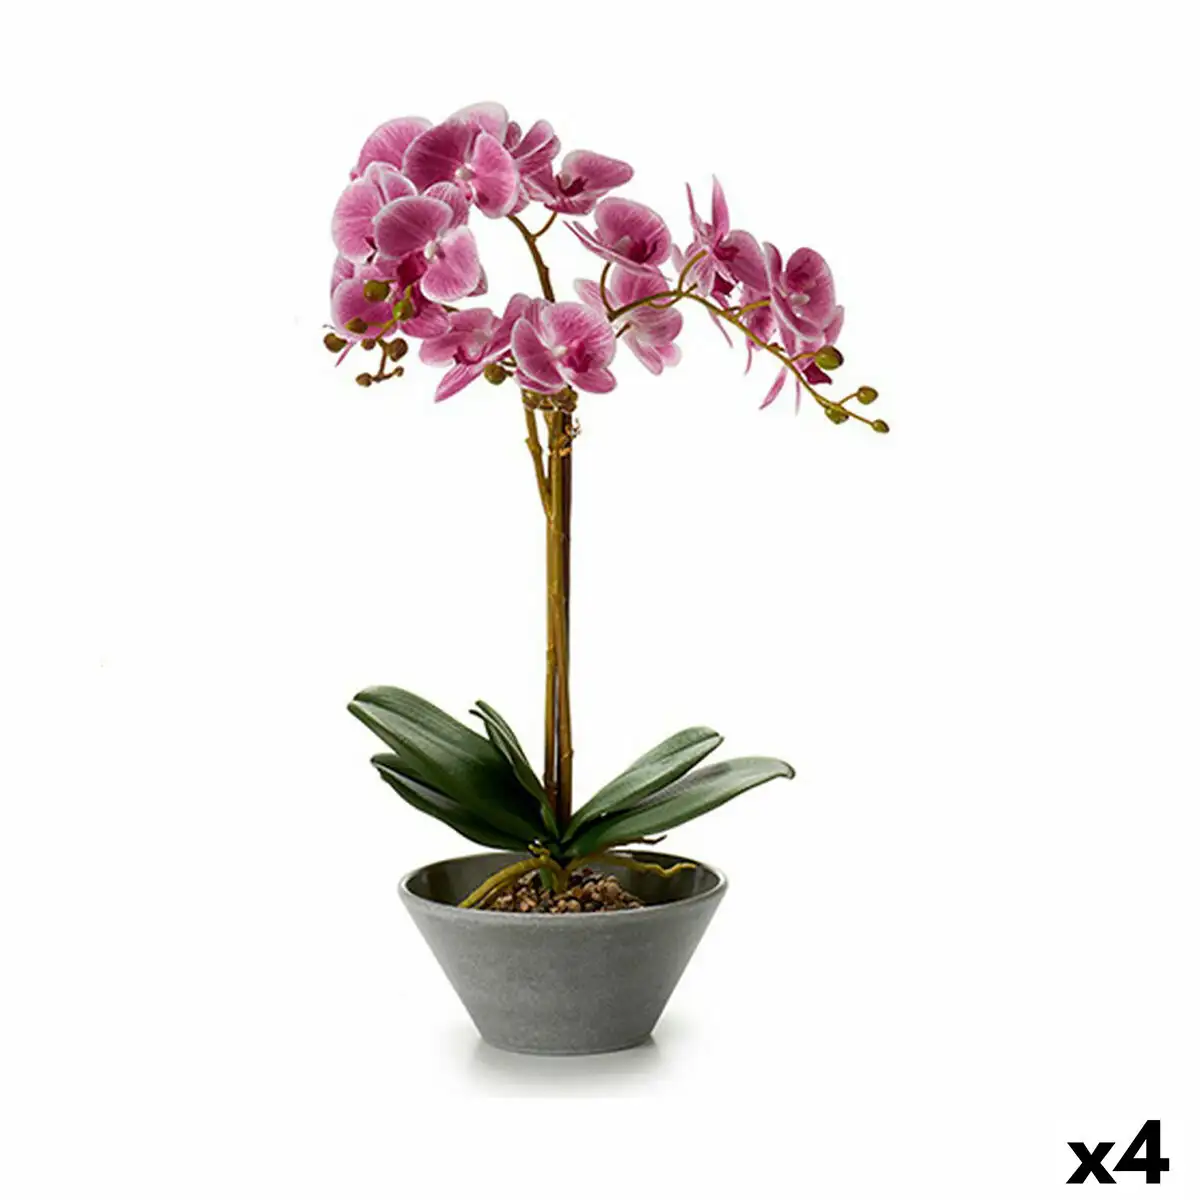 Plante decorative orchidee 16 x 48 x 28 cm plastique 4 unites _8837. DIAYTAR SENEGAL - Où Choisir est un Acte d'Amour pour le Sénégal. Explorez notre boutique en ligne et choisissez des articles qui célèbrent la culture et l'artisanat du pays.